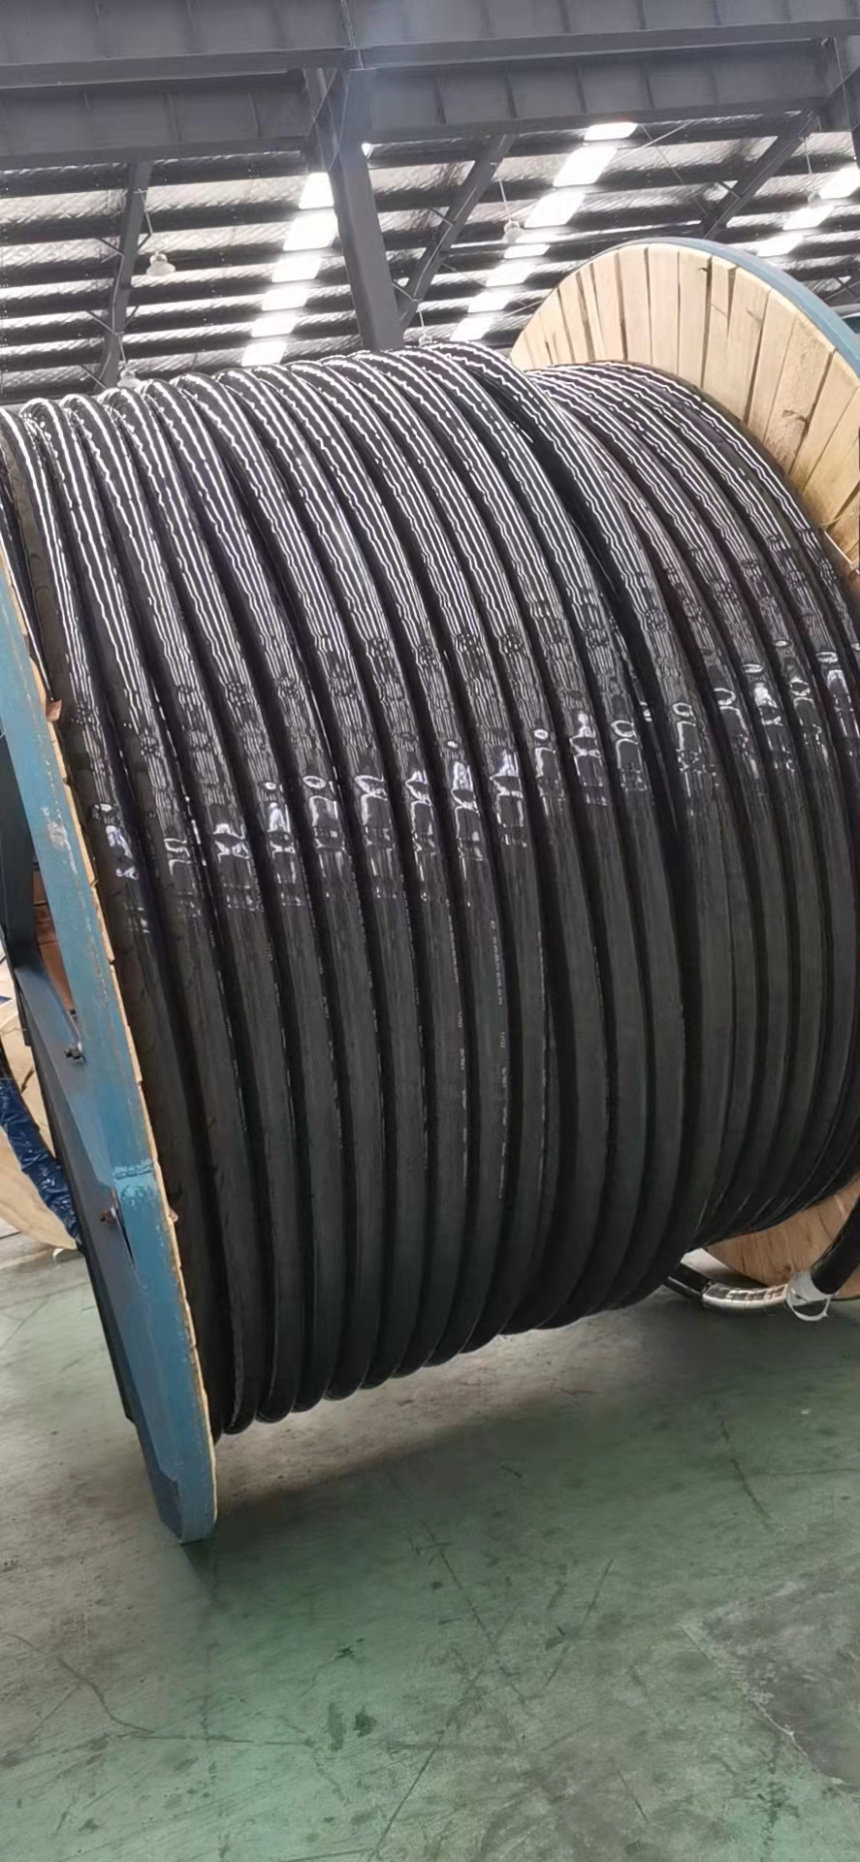 驻马店市300铜芯电缆回收多少钱一米 现金当场结算